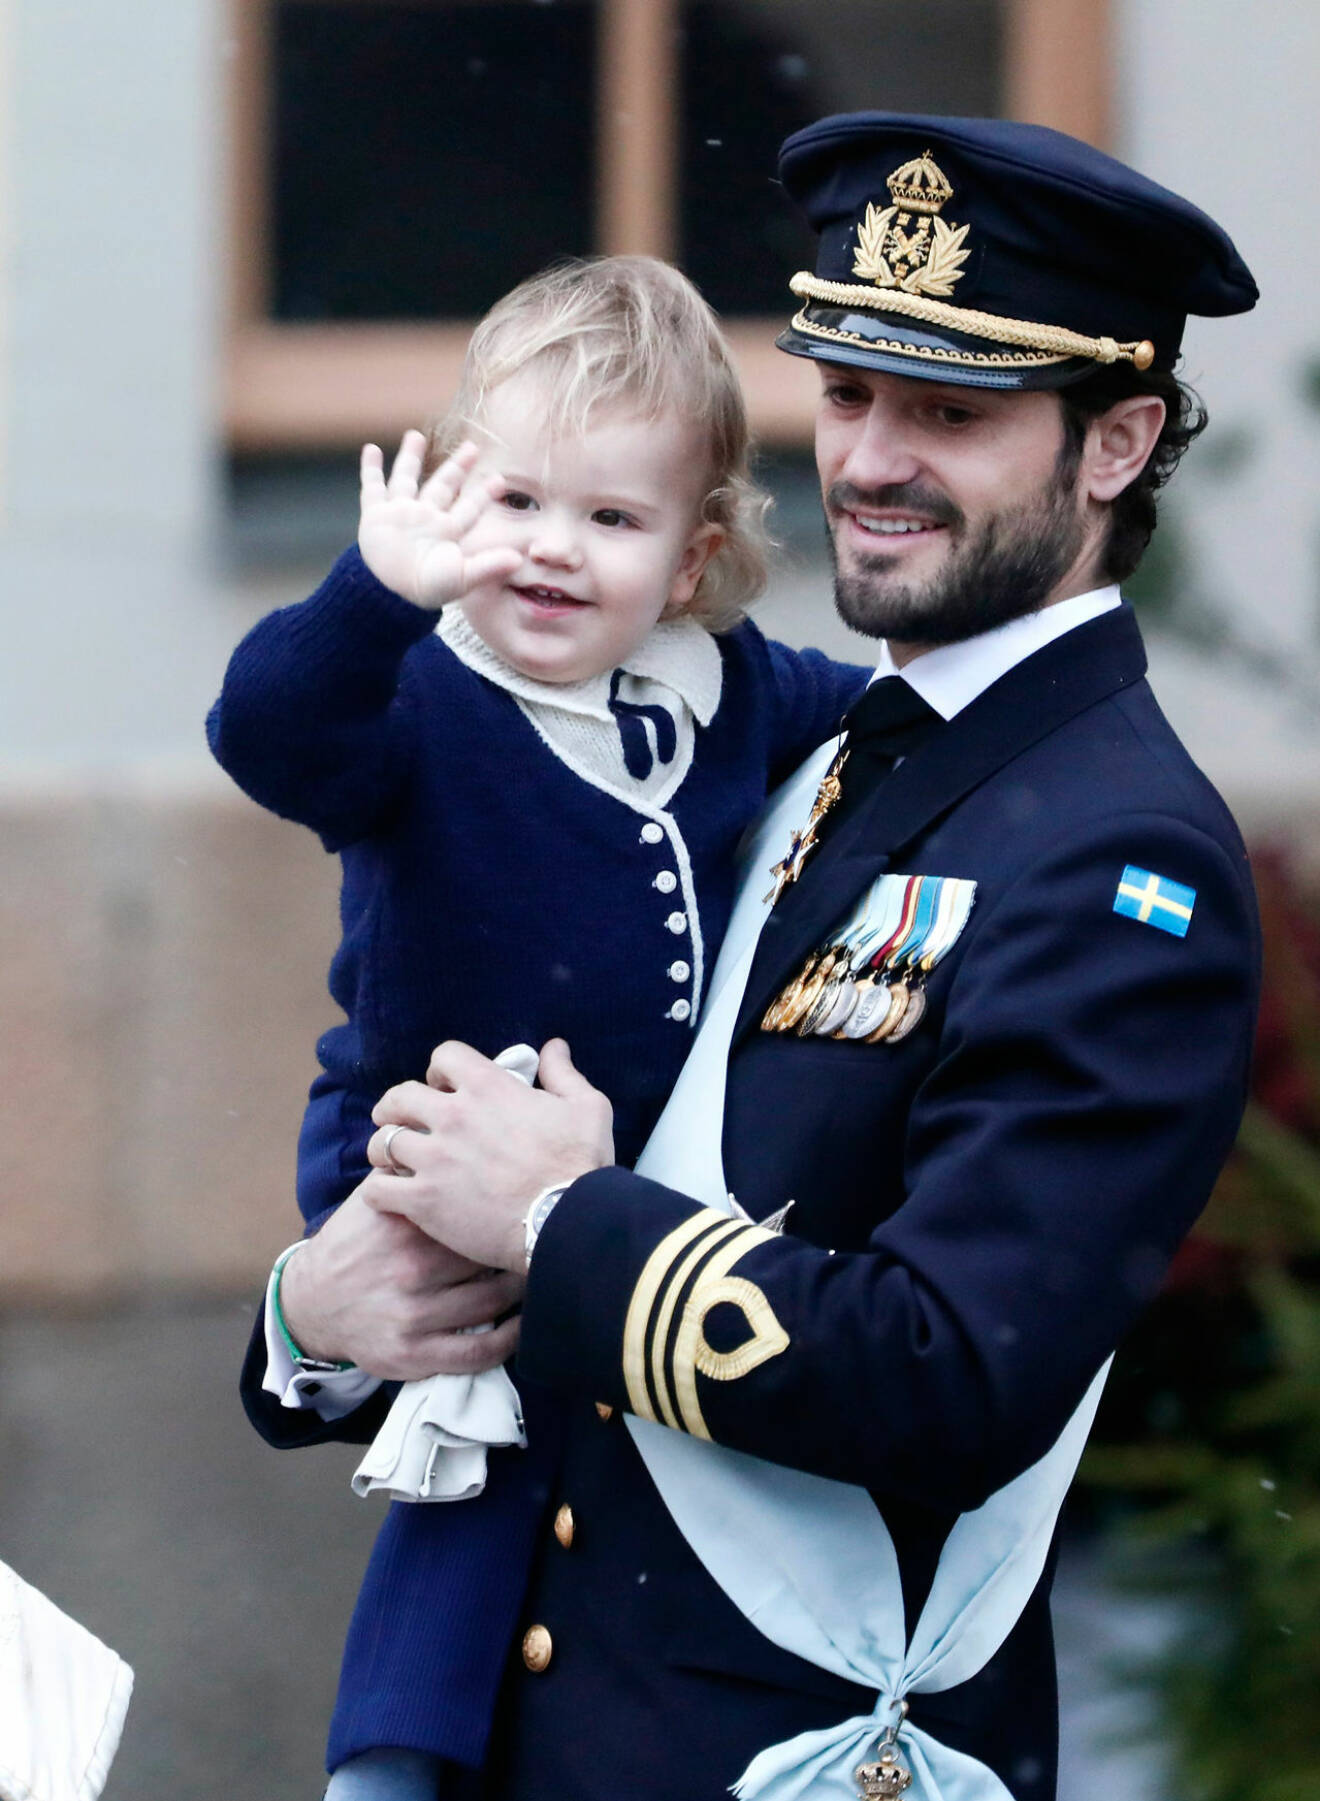 Marie Serneholts ene son är namne med prins Carl Philip, och hennes andre son är namne med prins Nicolas (även om bebisen ifråga stavar Nicholas med h)